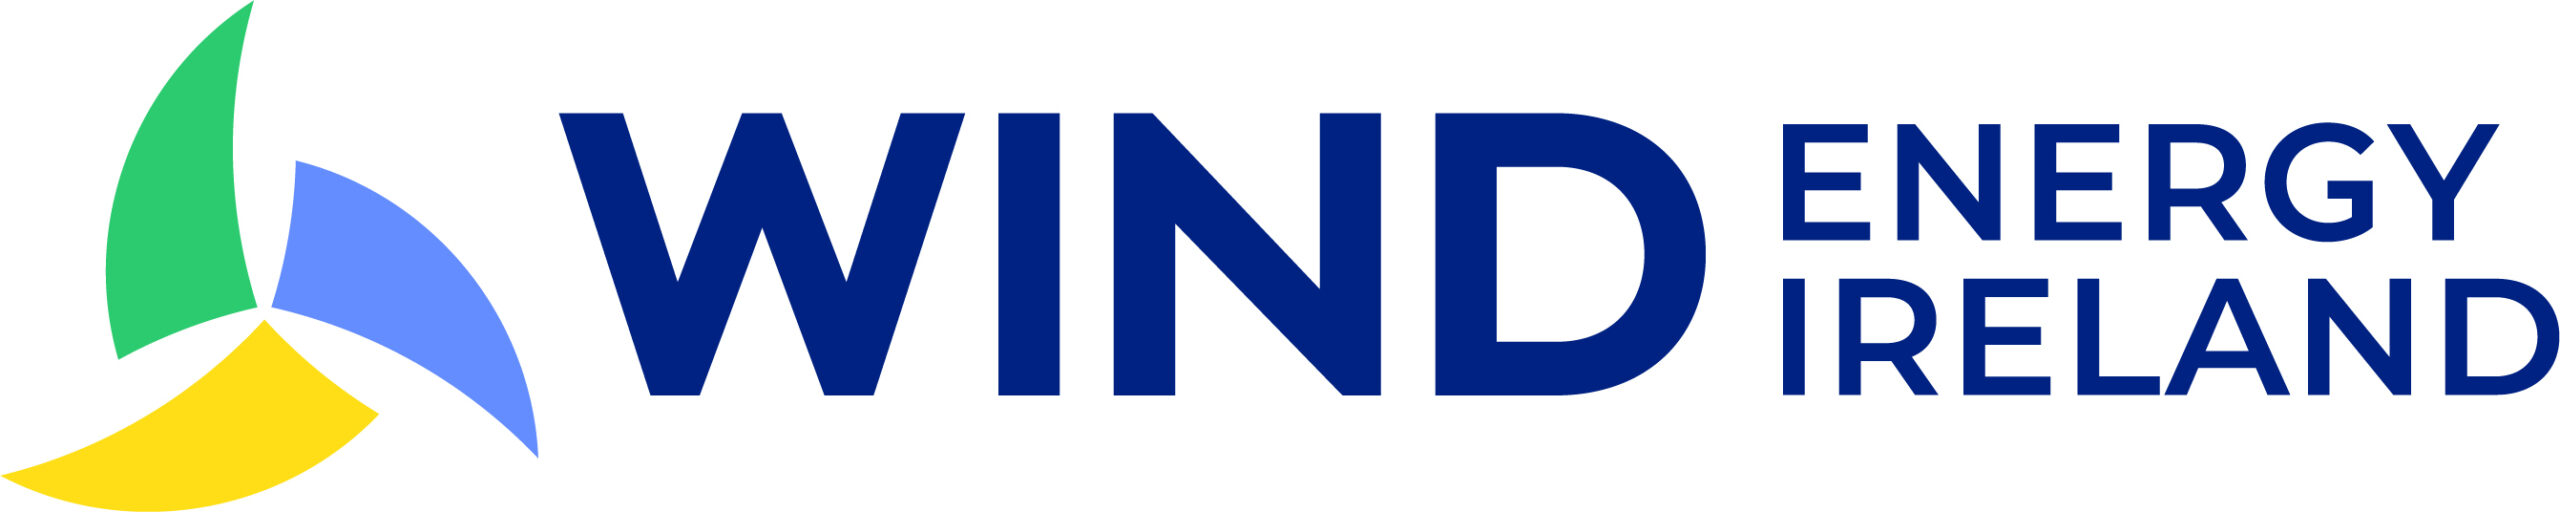 Wind-Energy-Ireland-Logo-scaled-1